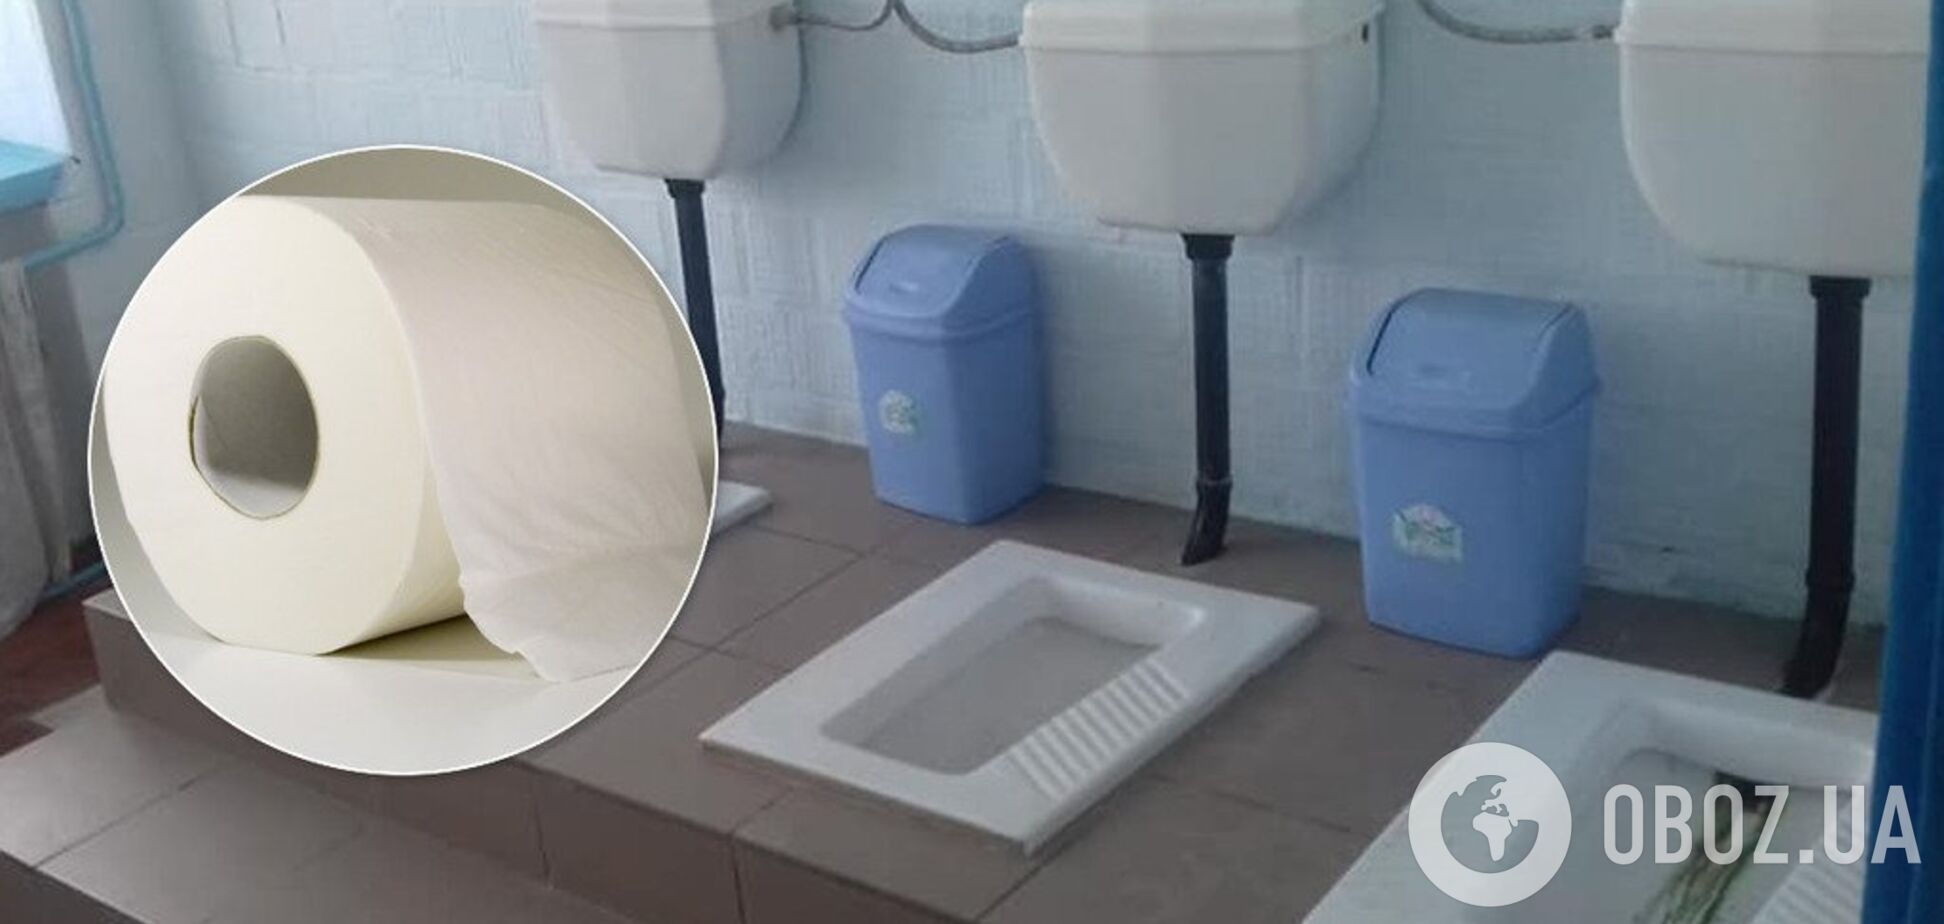 Чтобы не забивали трубы: в школах на Киевщине в туалетах запретили бумагу